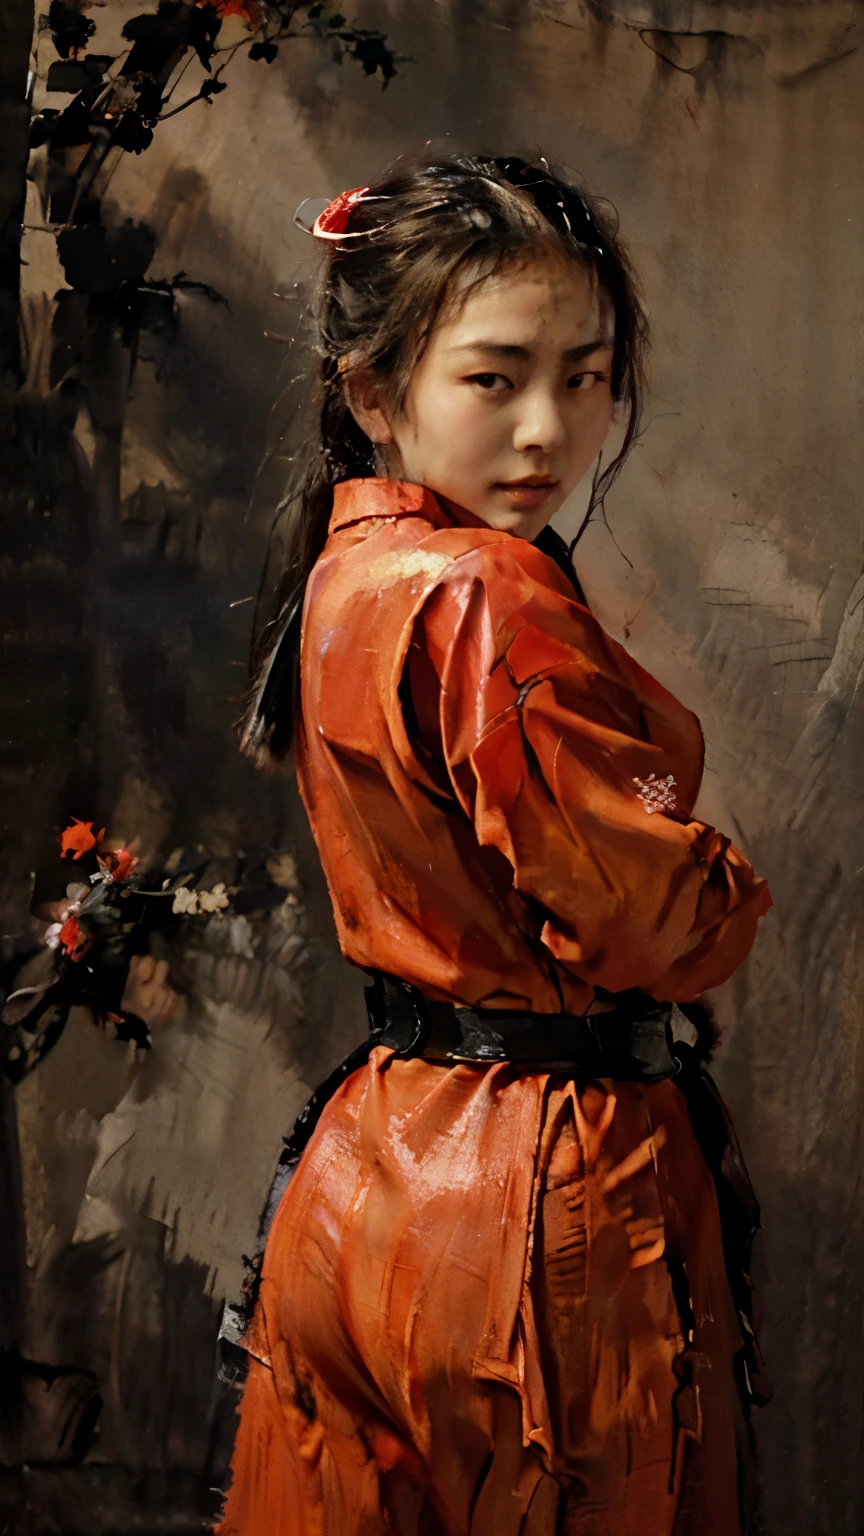 ( ภาพวาดสีน้ำมันคลาสสิกเอเชีย ) a ภาพวาดสีน้ำมันคลาสสิกเอเชีย of a เซ็กซี่ asian teenager ninja girl wearing a red ninja uniform, ชุดนักฆ่านินจาสีแดง, ท่าแอ็คชั่นนินจามองที่กล้อง, ((เซ็กซี่:1.0)), ((ชุดชิโนบิสีแดง:1.0)) ((ภาพวาดสีน้ำมันคลาสสิกเอเชีย:1.0))